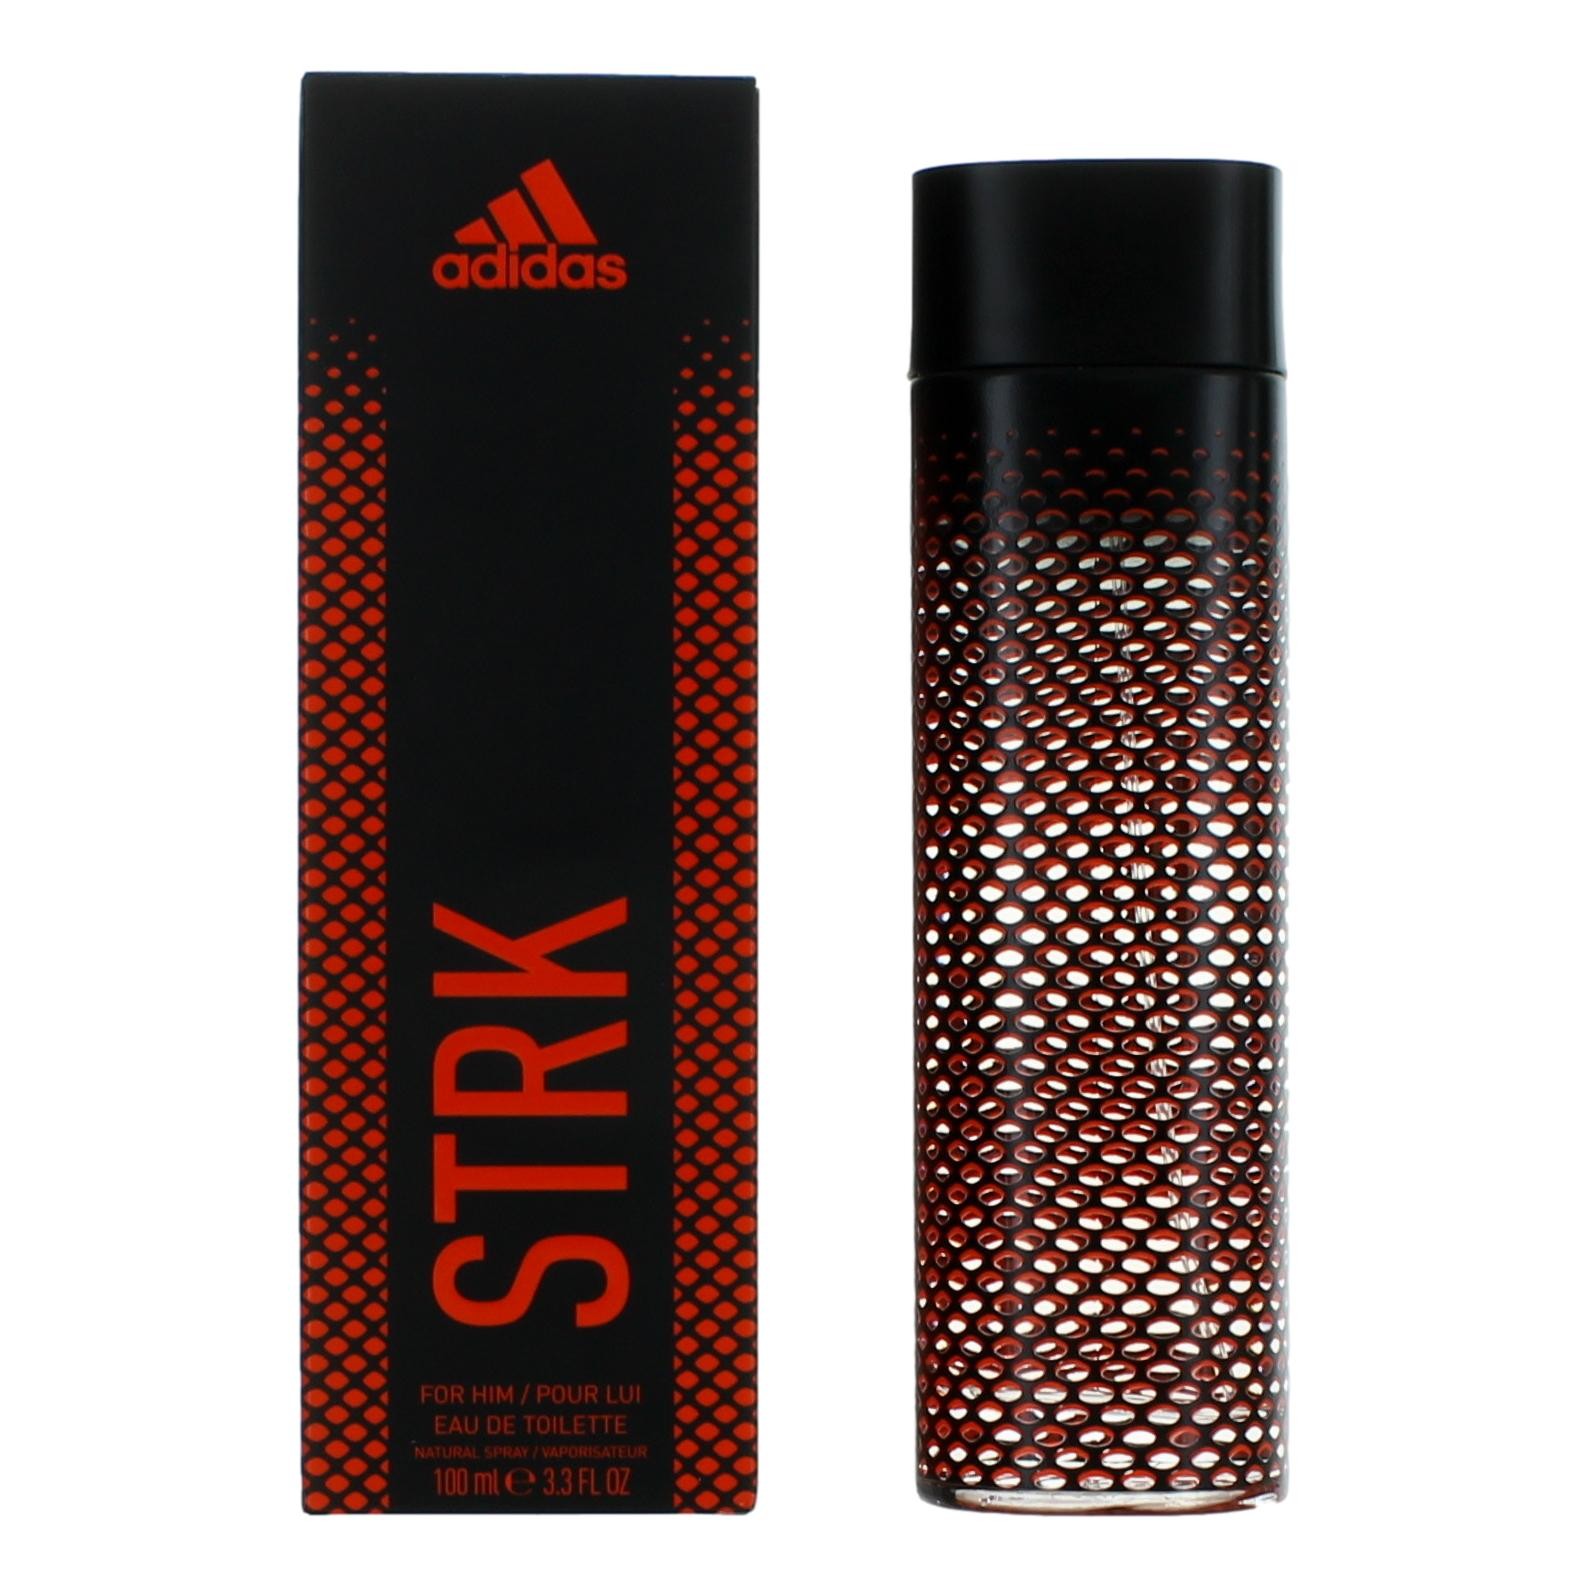 Adidas Sport Strk by Adidas 3.3 oz Eau de Toilette Spray for Men (Strike)